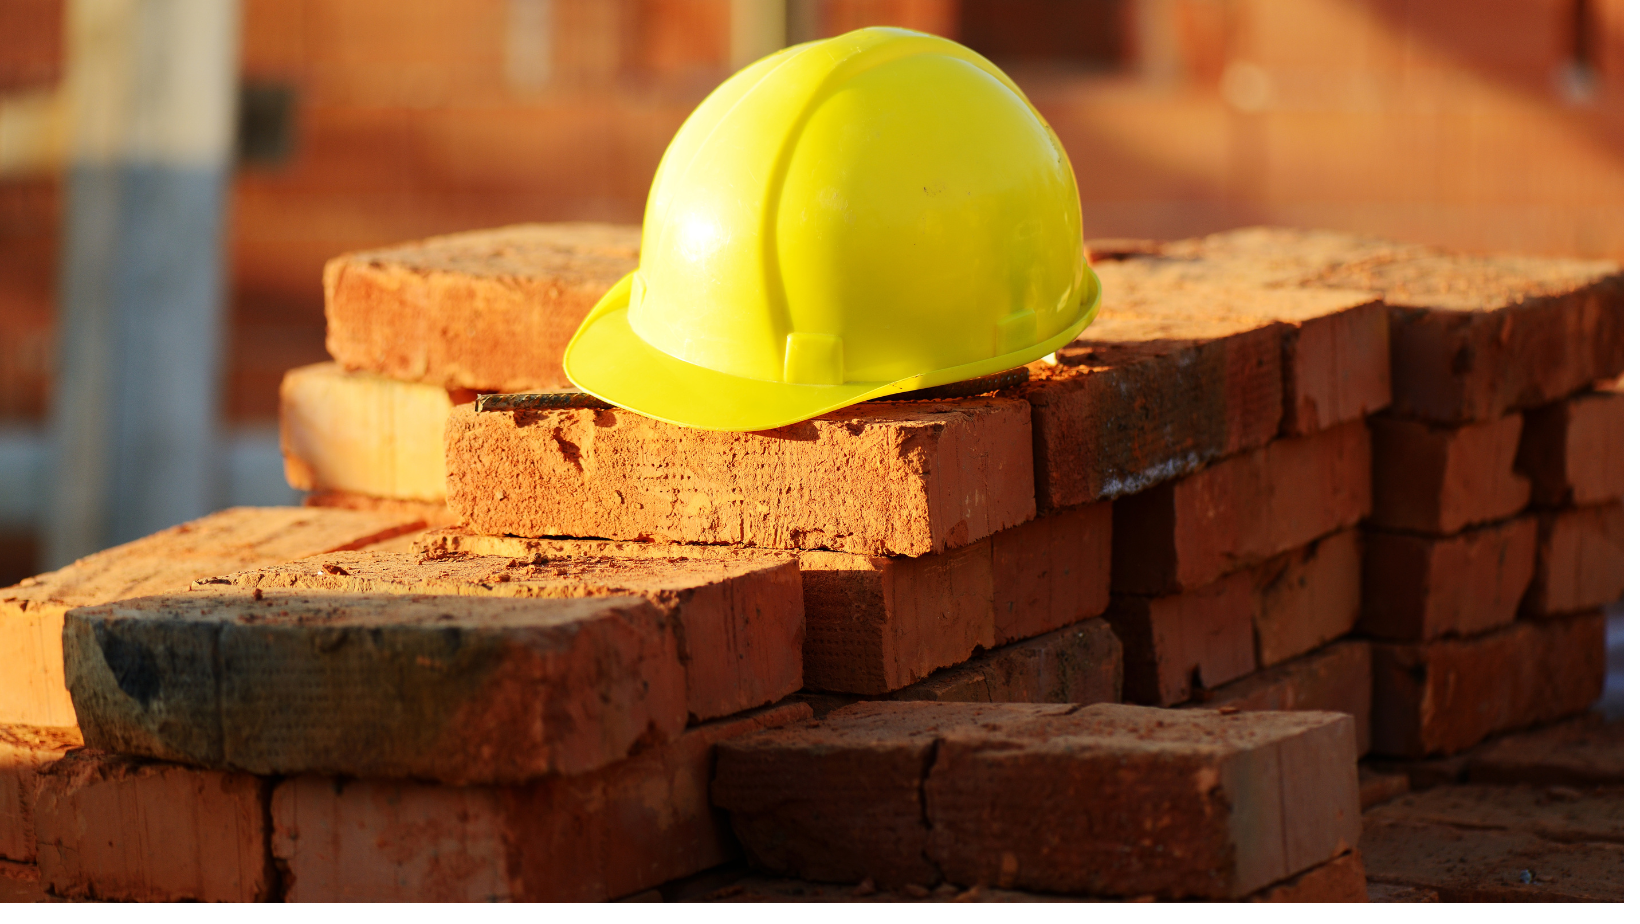 Prevención de riesgos laborales en la construcción